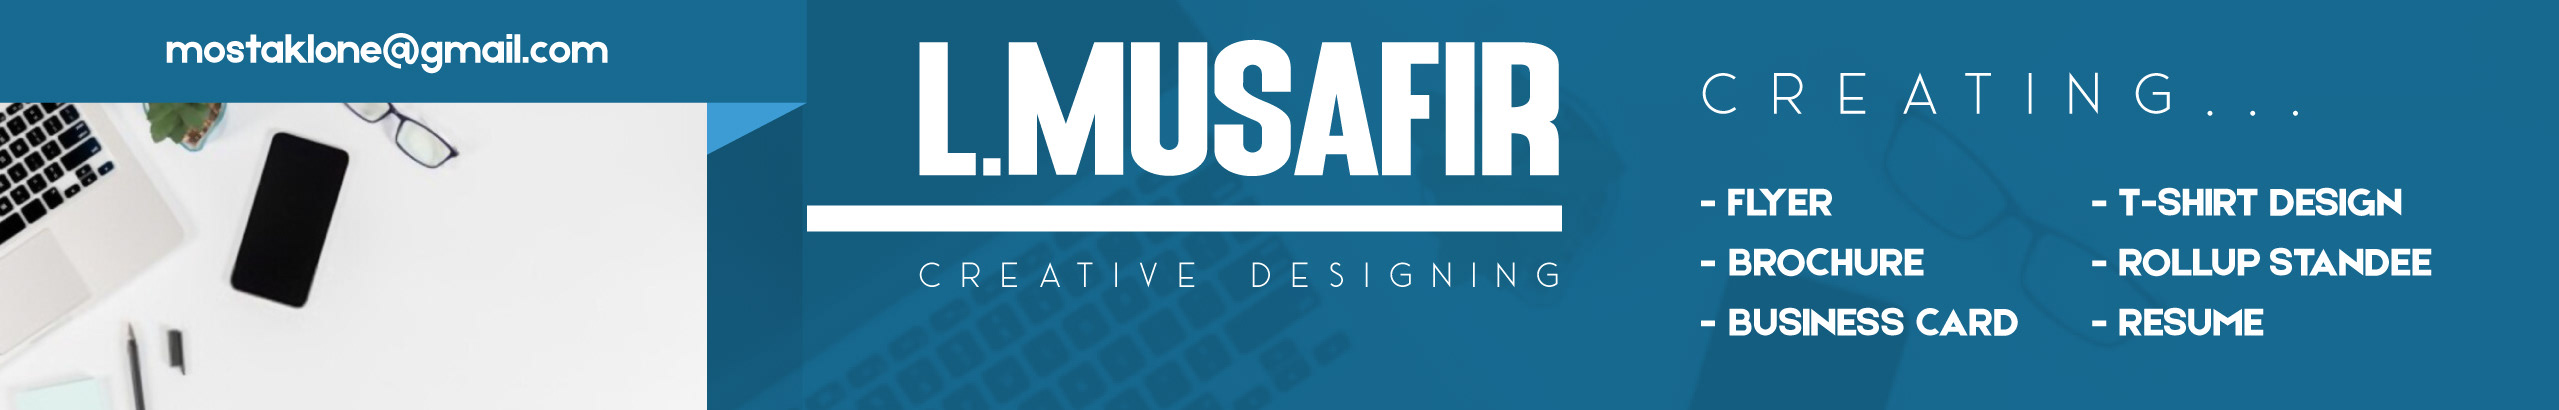 L. Musafir's profile banner